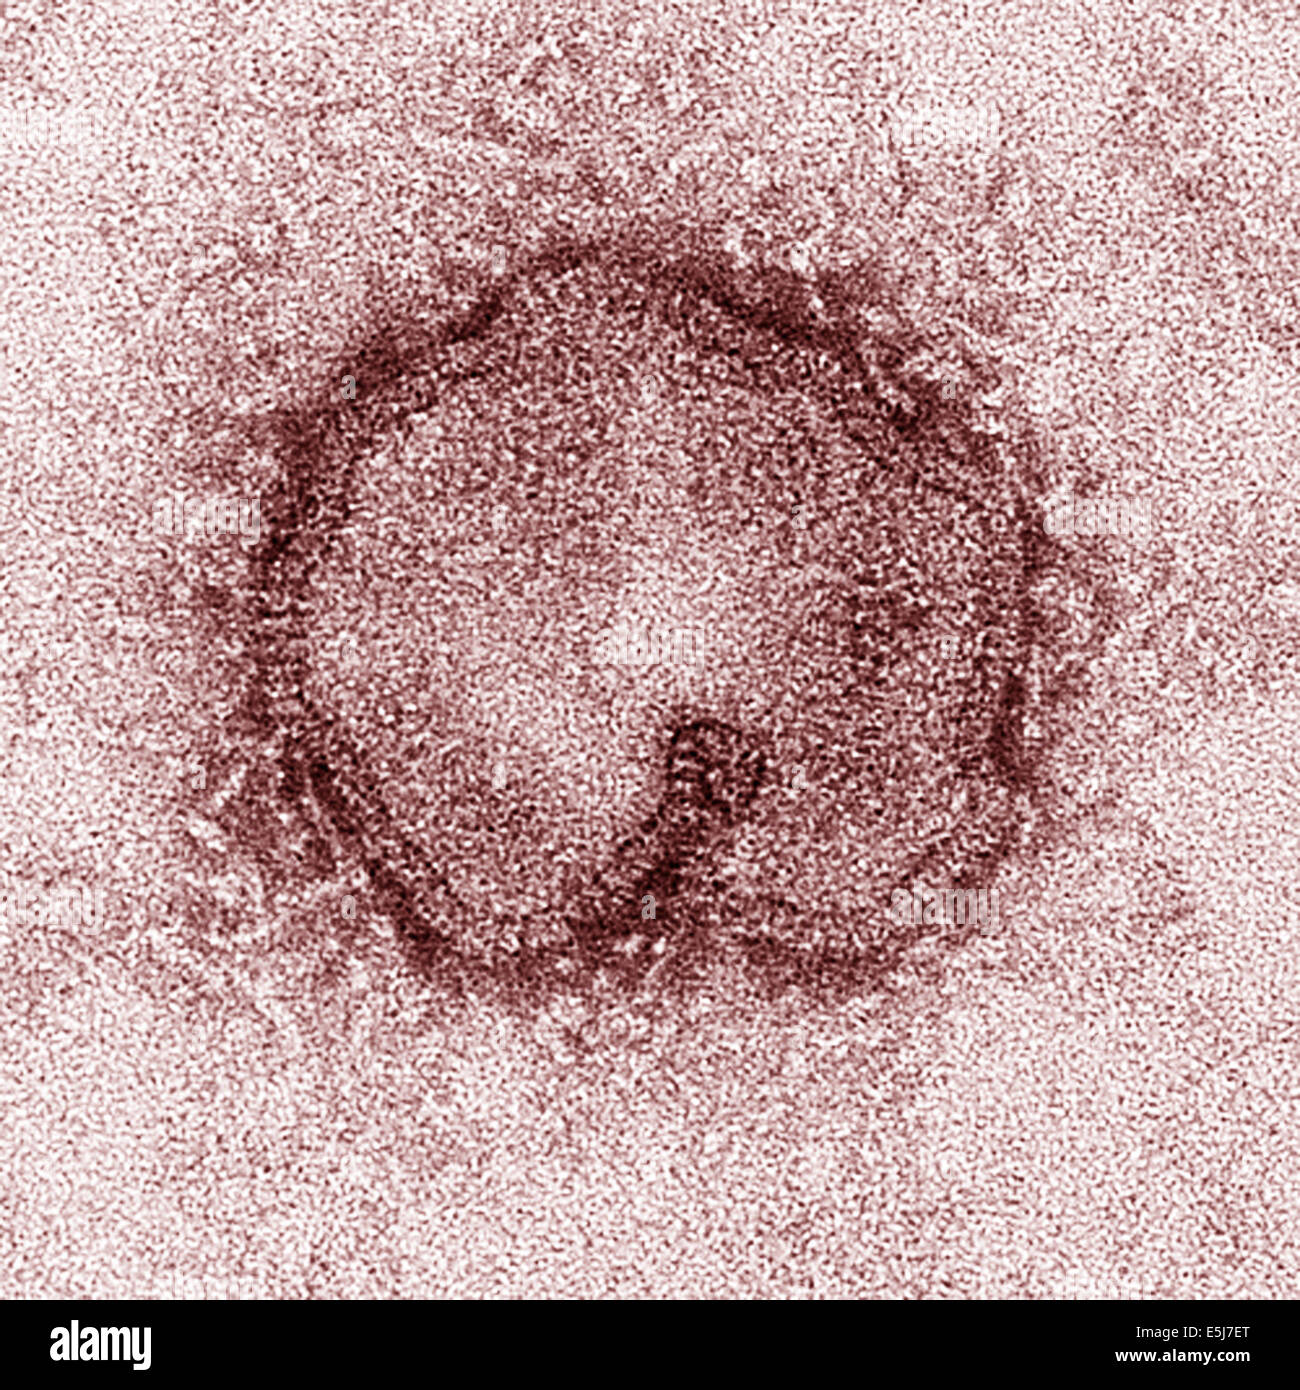 Sferiche di influenza H7N9 virus come osservata attraverso un microscopio elettronico. Entrambi i filamenti e sfere sono osservati in questa foto dagli archivi di stampa Ritratto Service Foto Stock